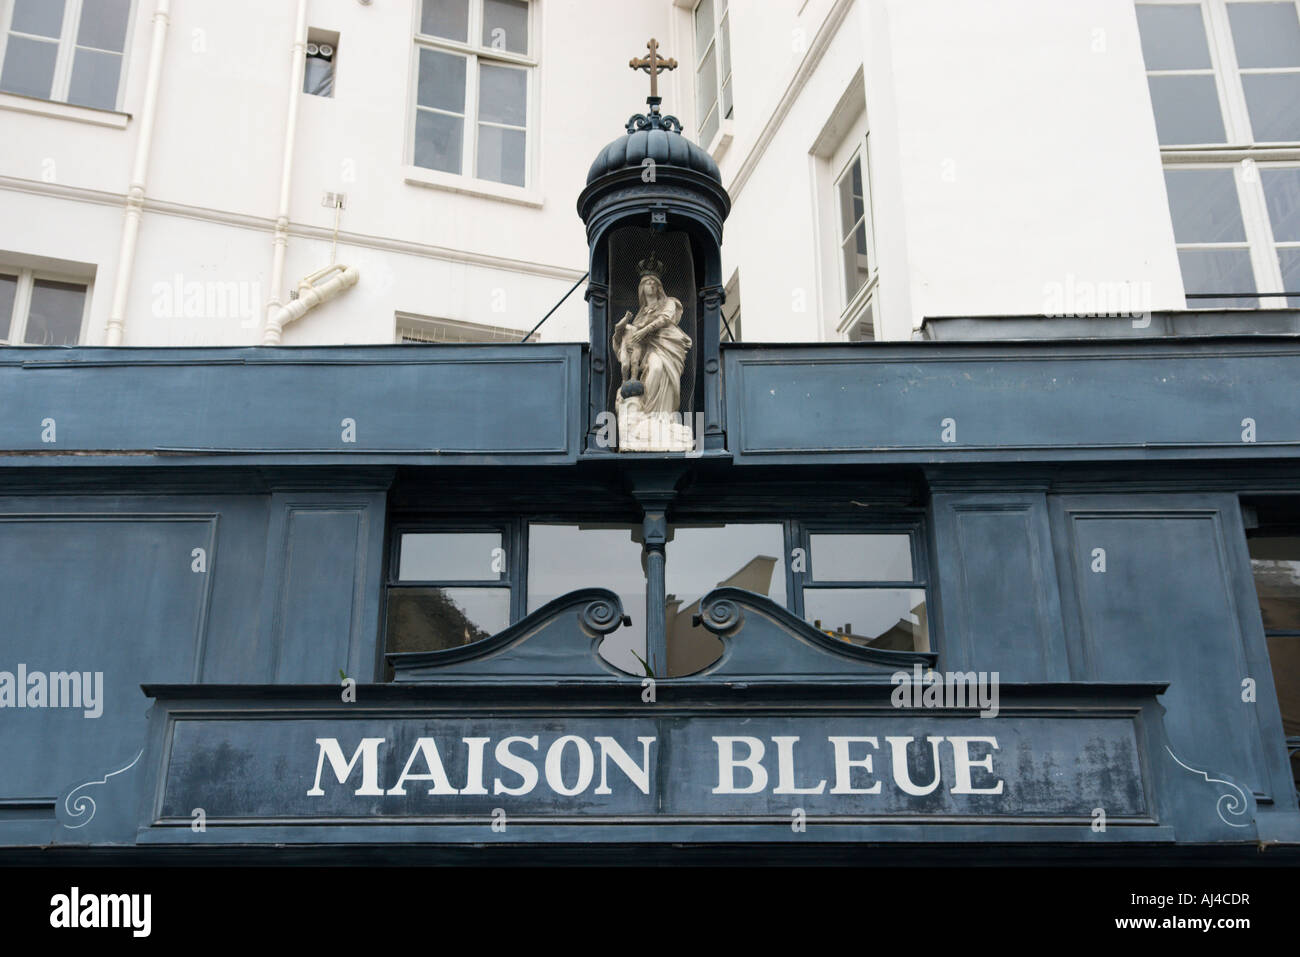 Maison Bleue Place des Victoires Paris France Stock Photo